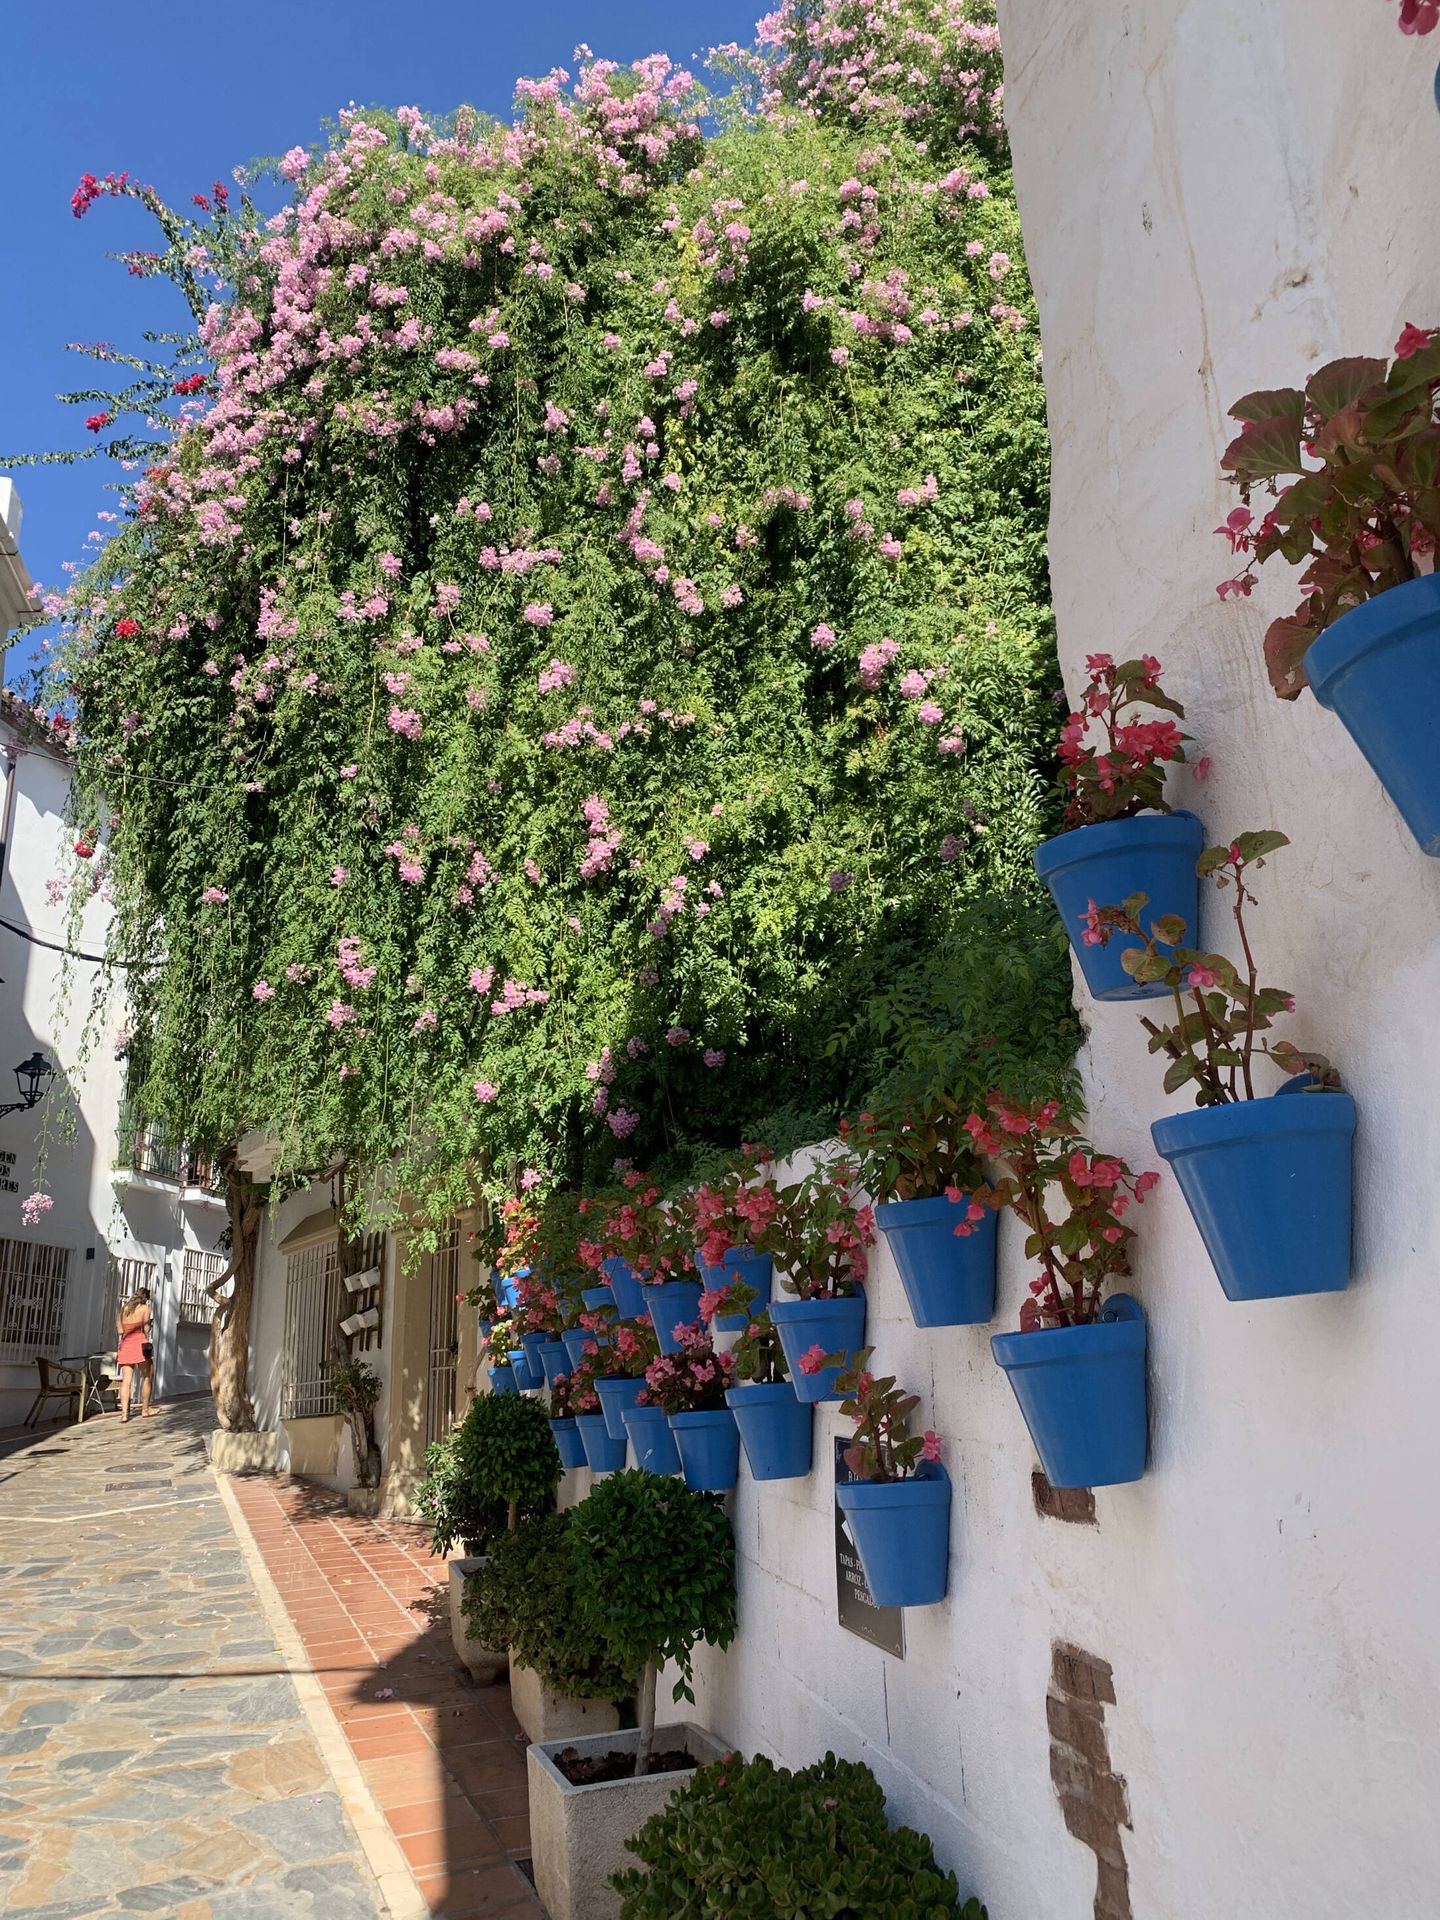 Las flores no pueden faltar en las calles de Marbella. (Cortesía)